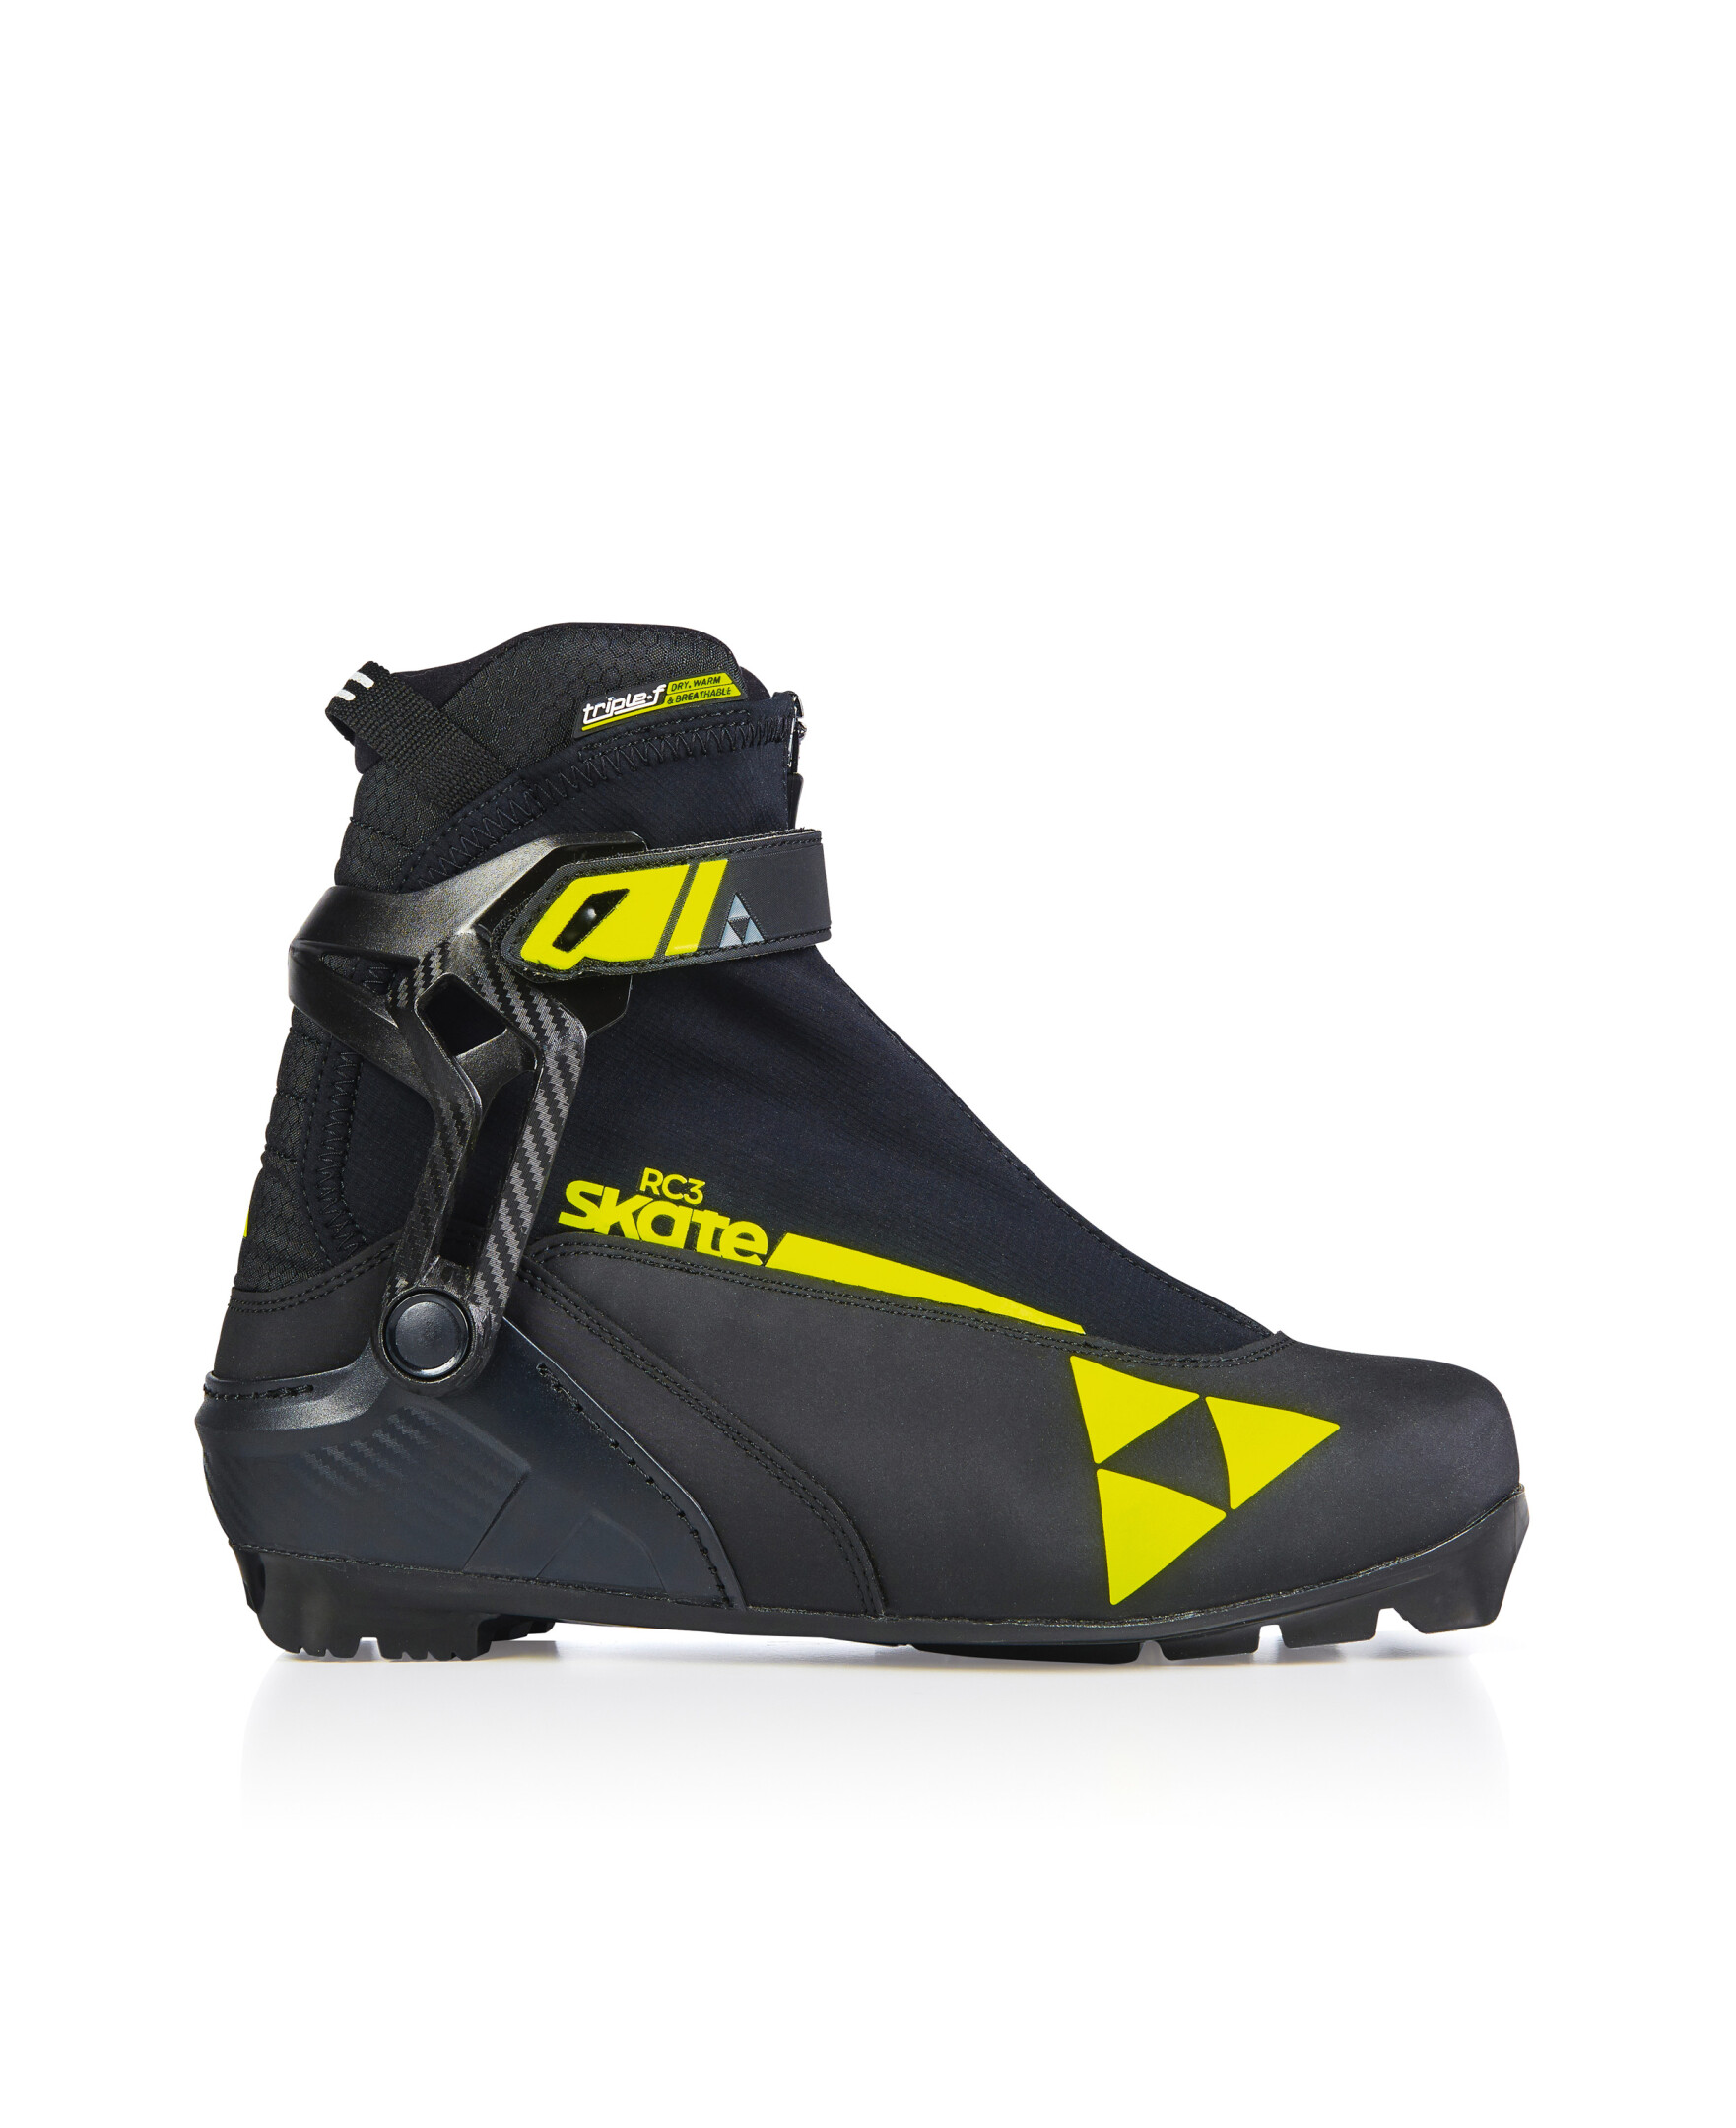 Ботинки лыжные NNN Fischer RC3 SKATE S15621 размер 41